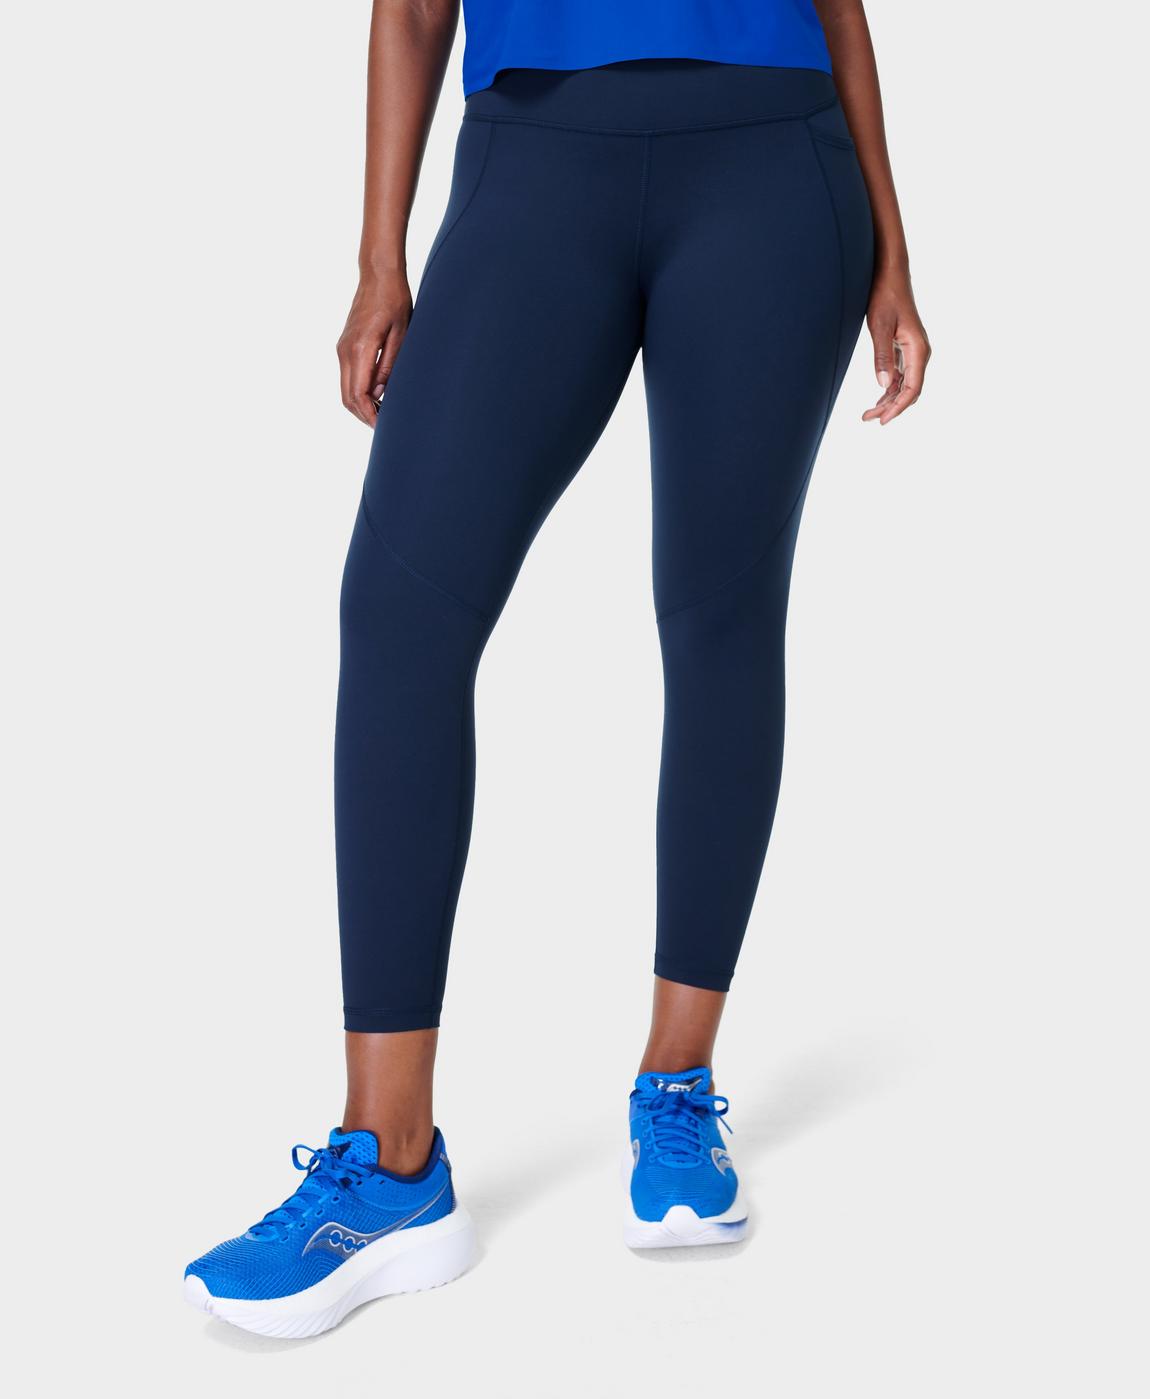 Power 7/8 Gym Leggings - Navy Blue, Women's Leggings